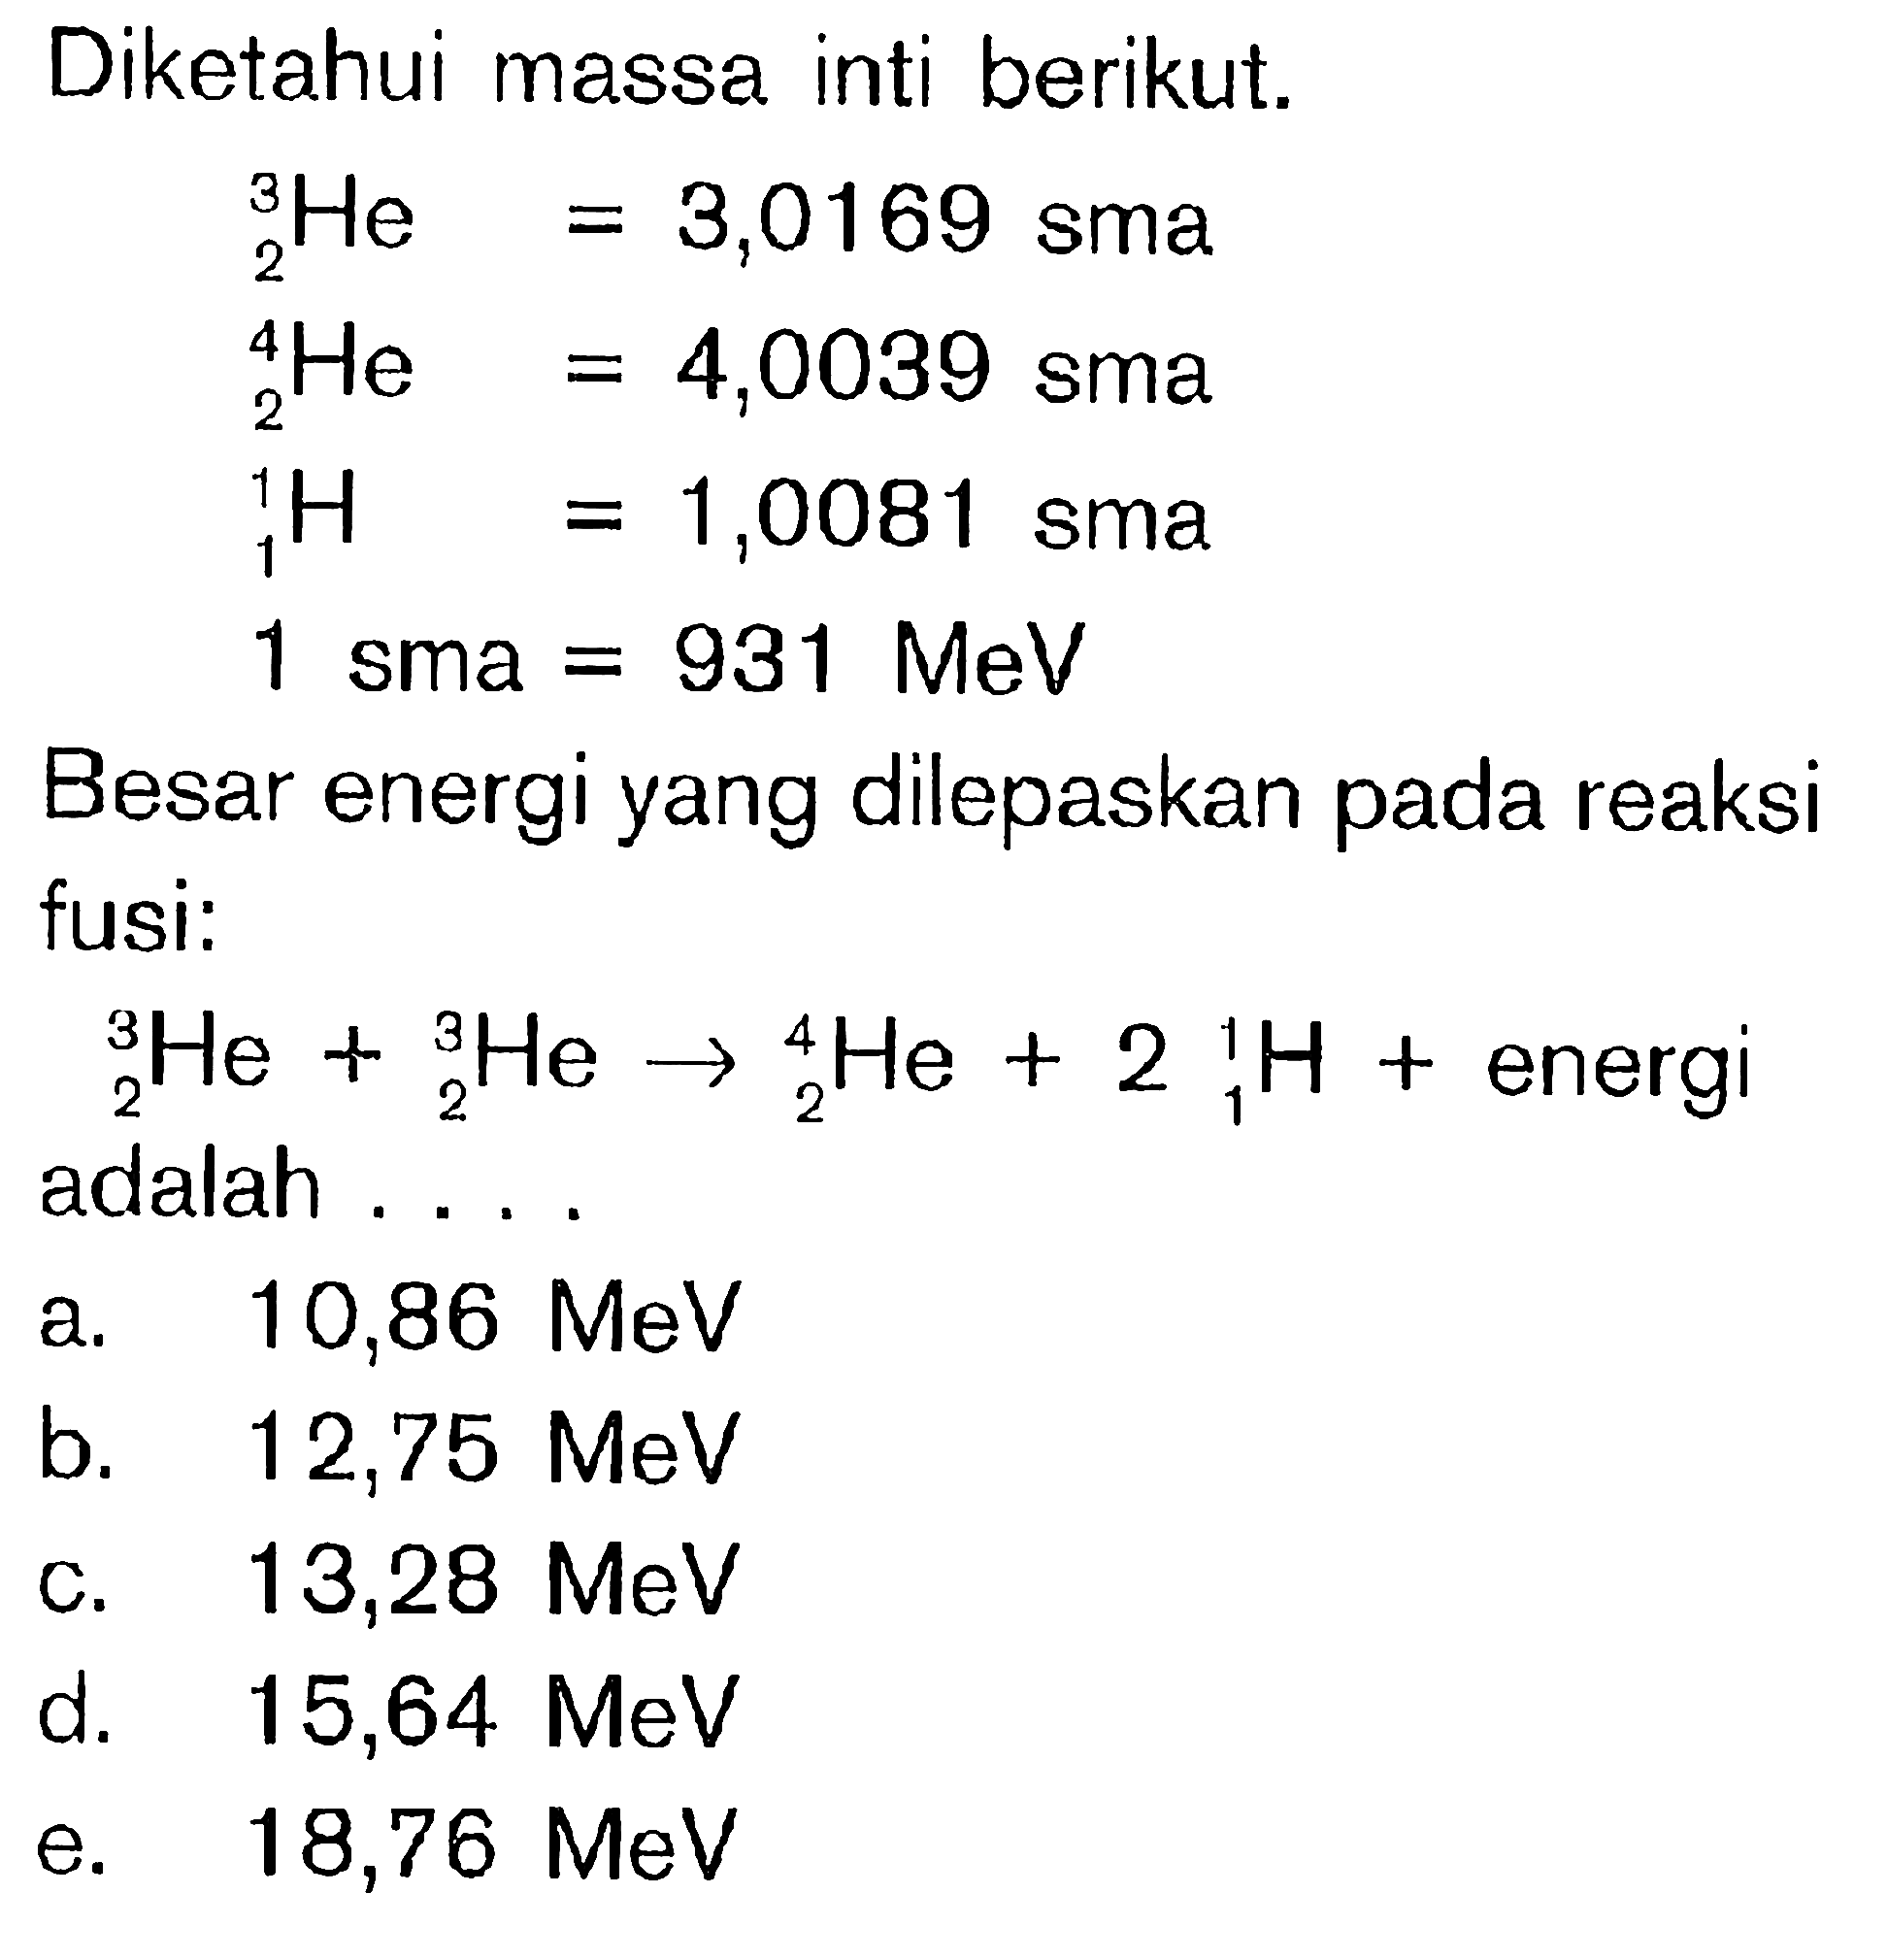 Diketahui massa inti berikut. 2^3 He=3,0169 sma  2^4 He=4,0039 sma  1^1 H=1,0081 sma 1 sma=931 MeVBesar energi yang dilepaskan pada reaksi fusi: 2^3 He+ 2^3 He->2^4 He+2 1^1 H+ energi   adalah .... 